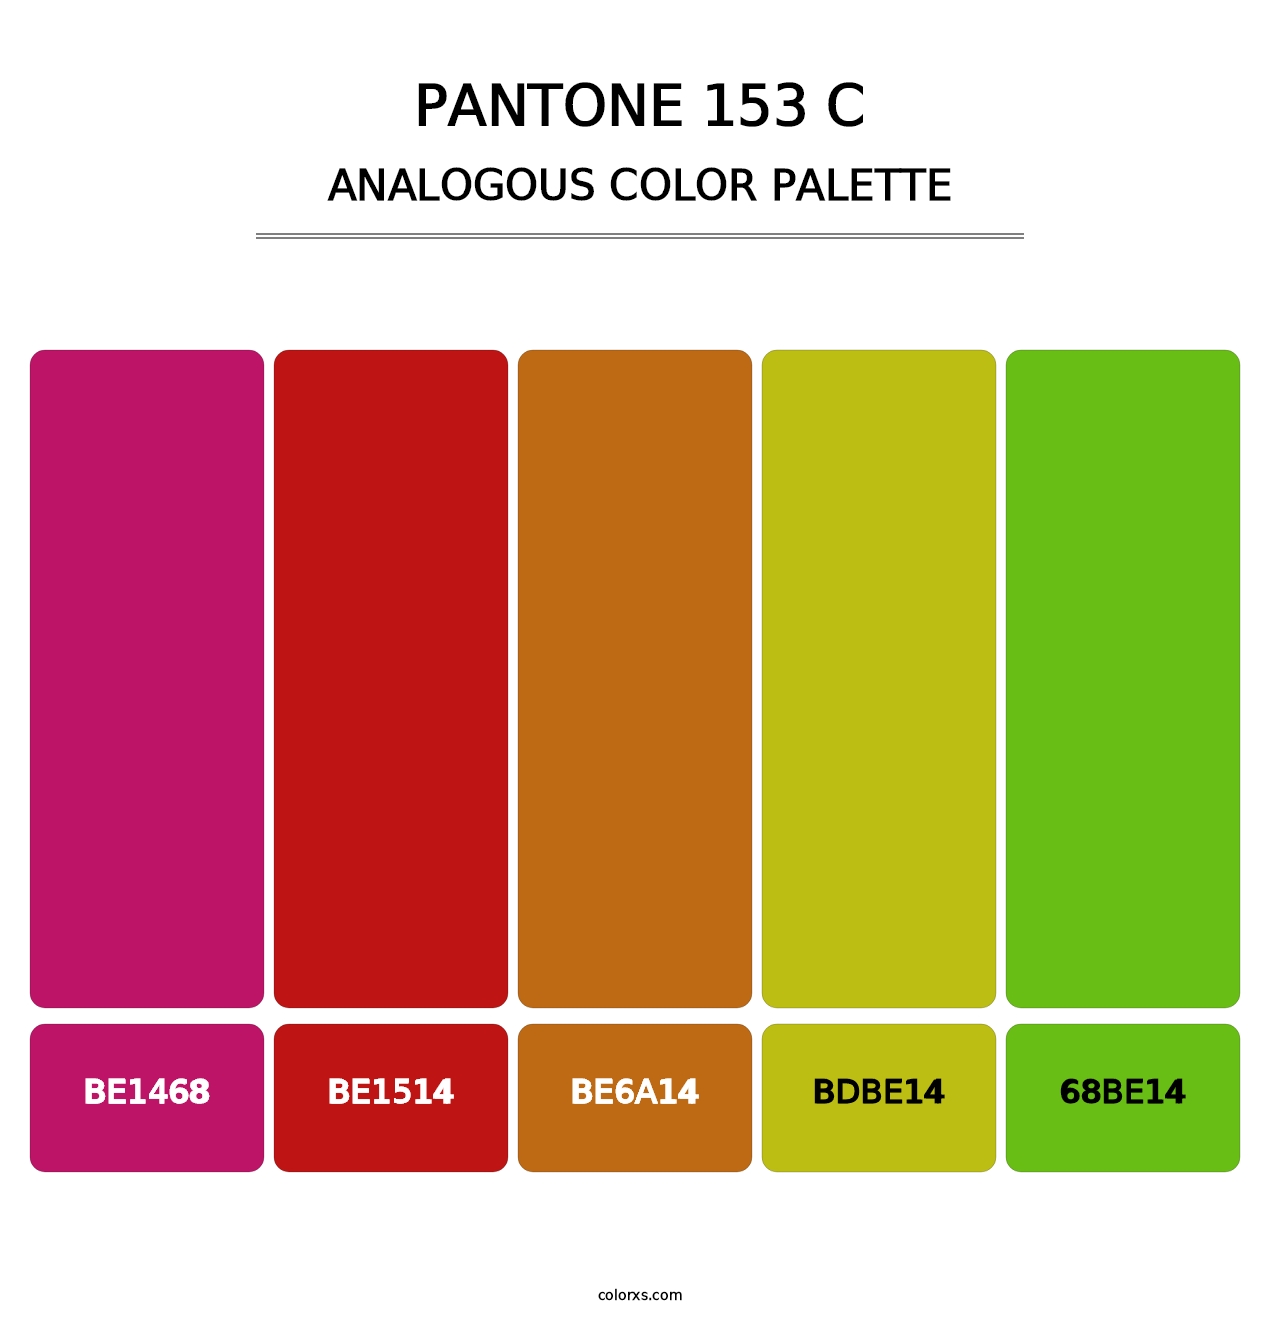 PANTONE 153 C - Analogous Color Palette